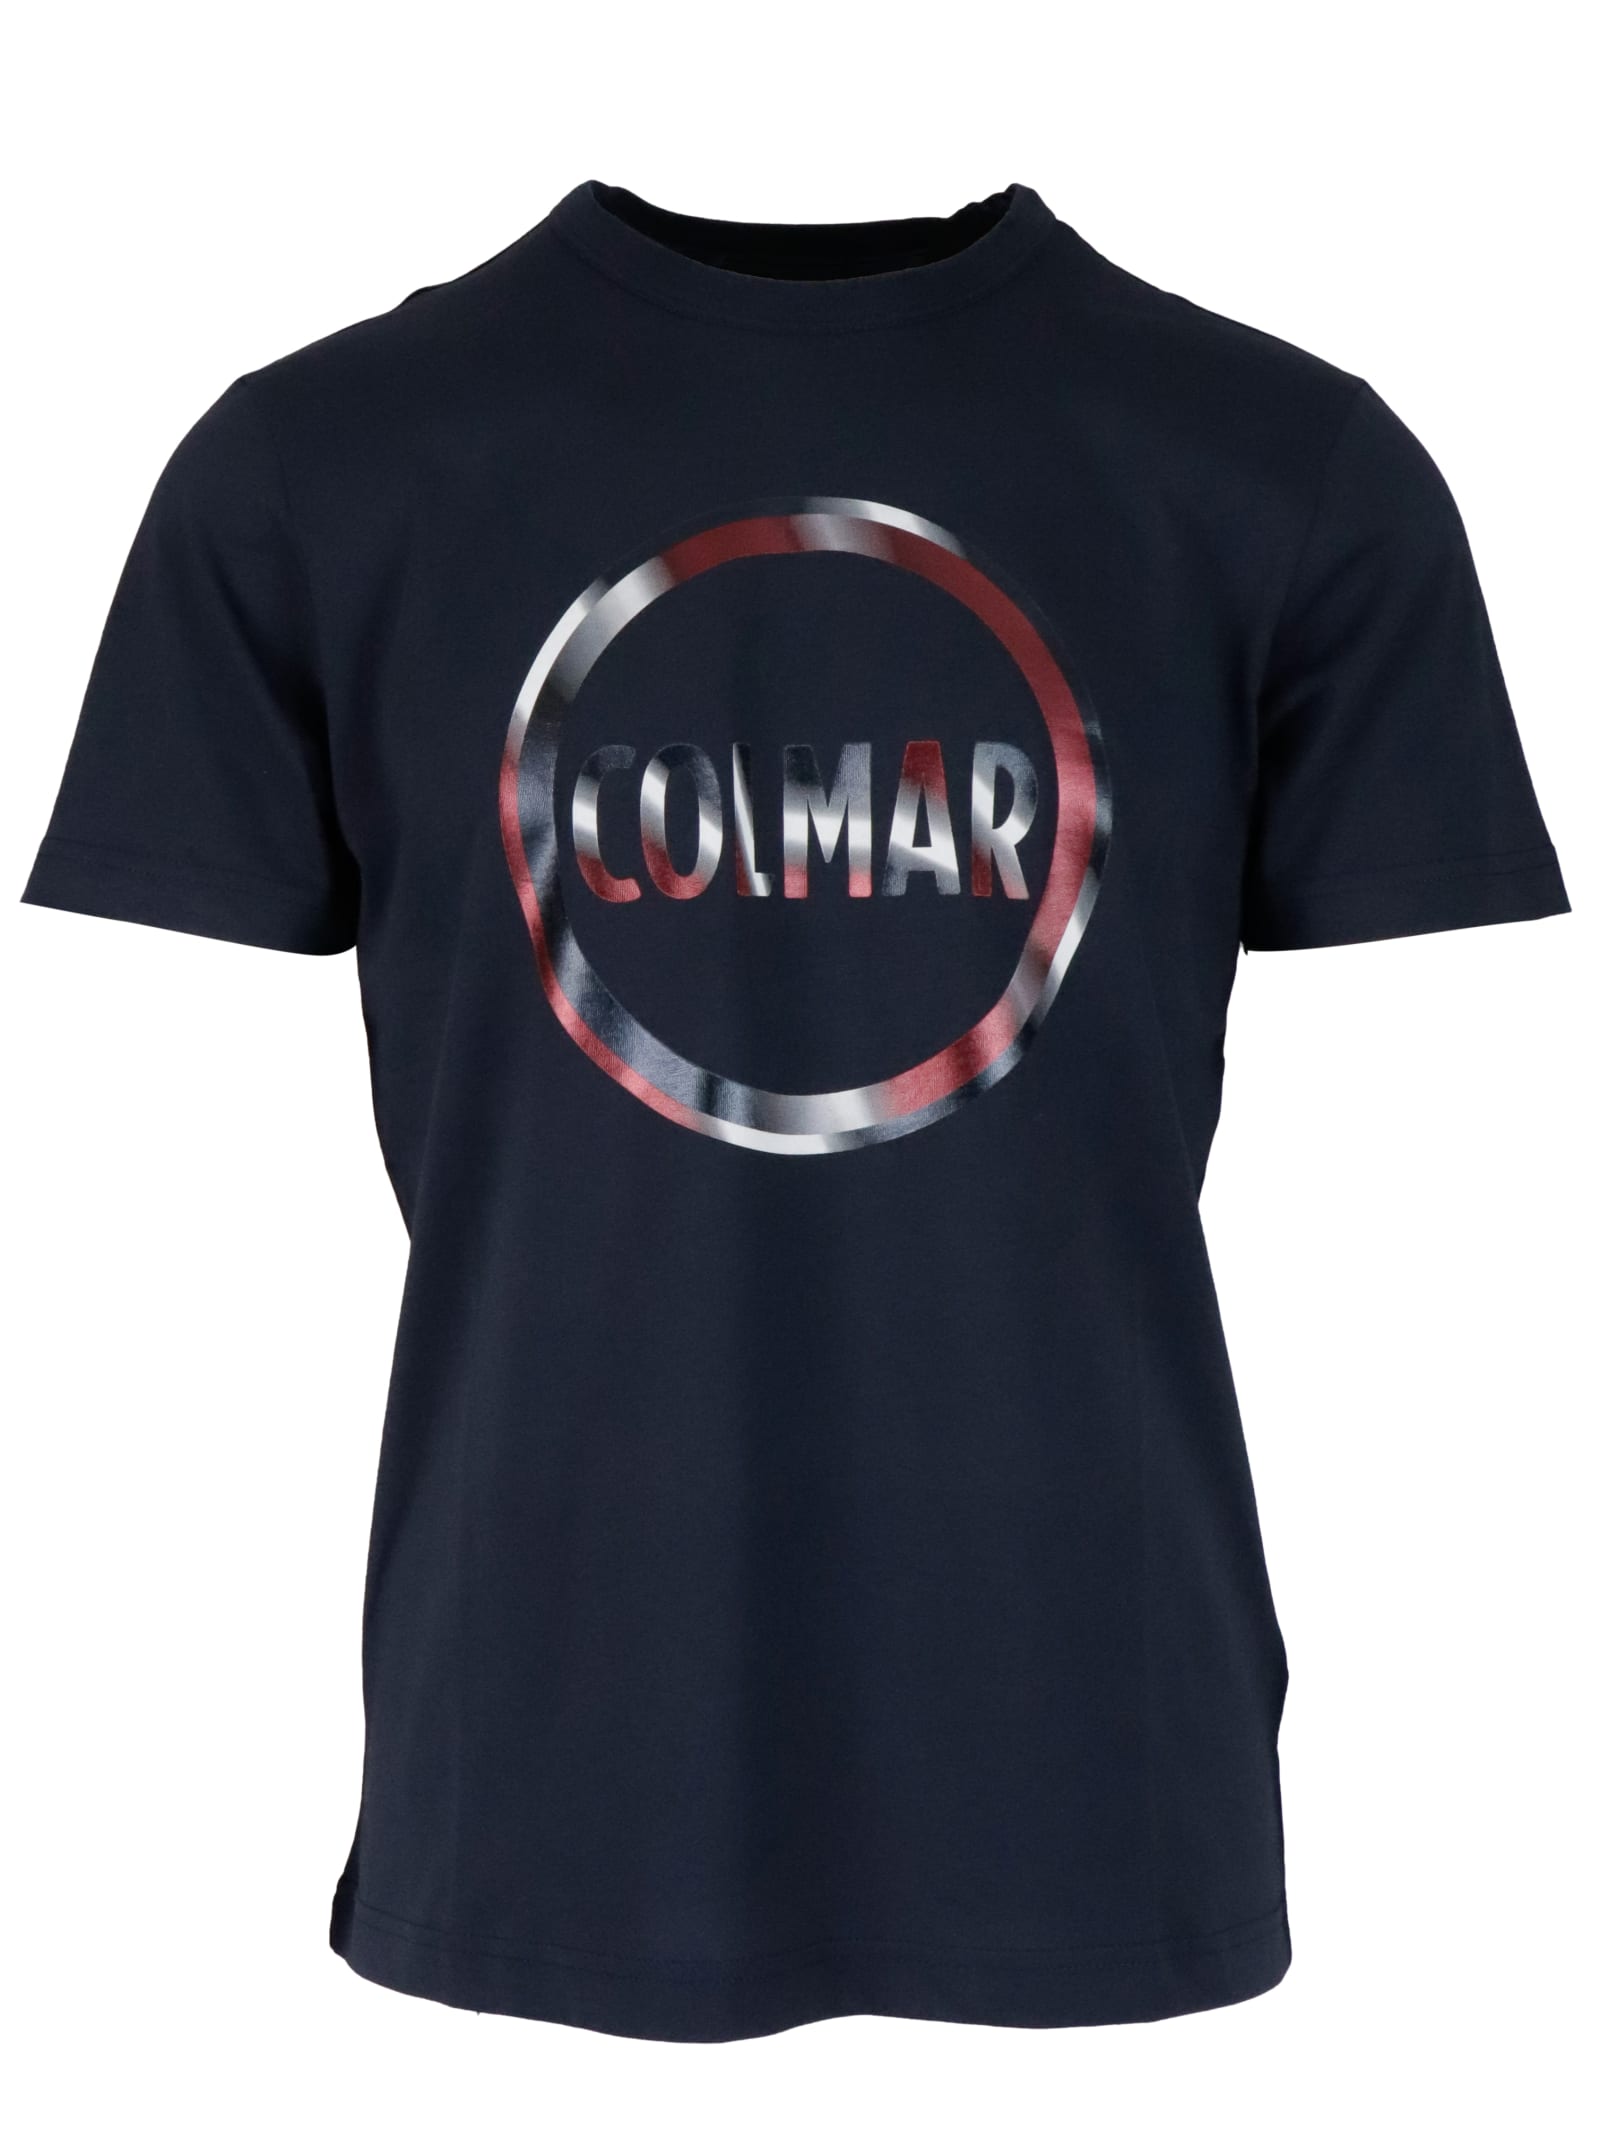 Colmar T-shirt Uomo T-shirt